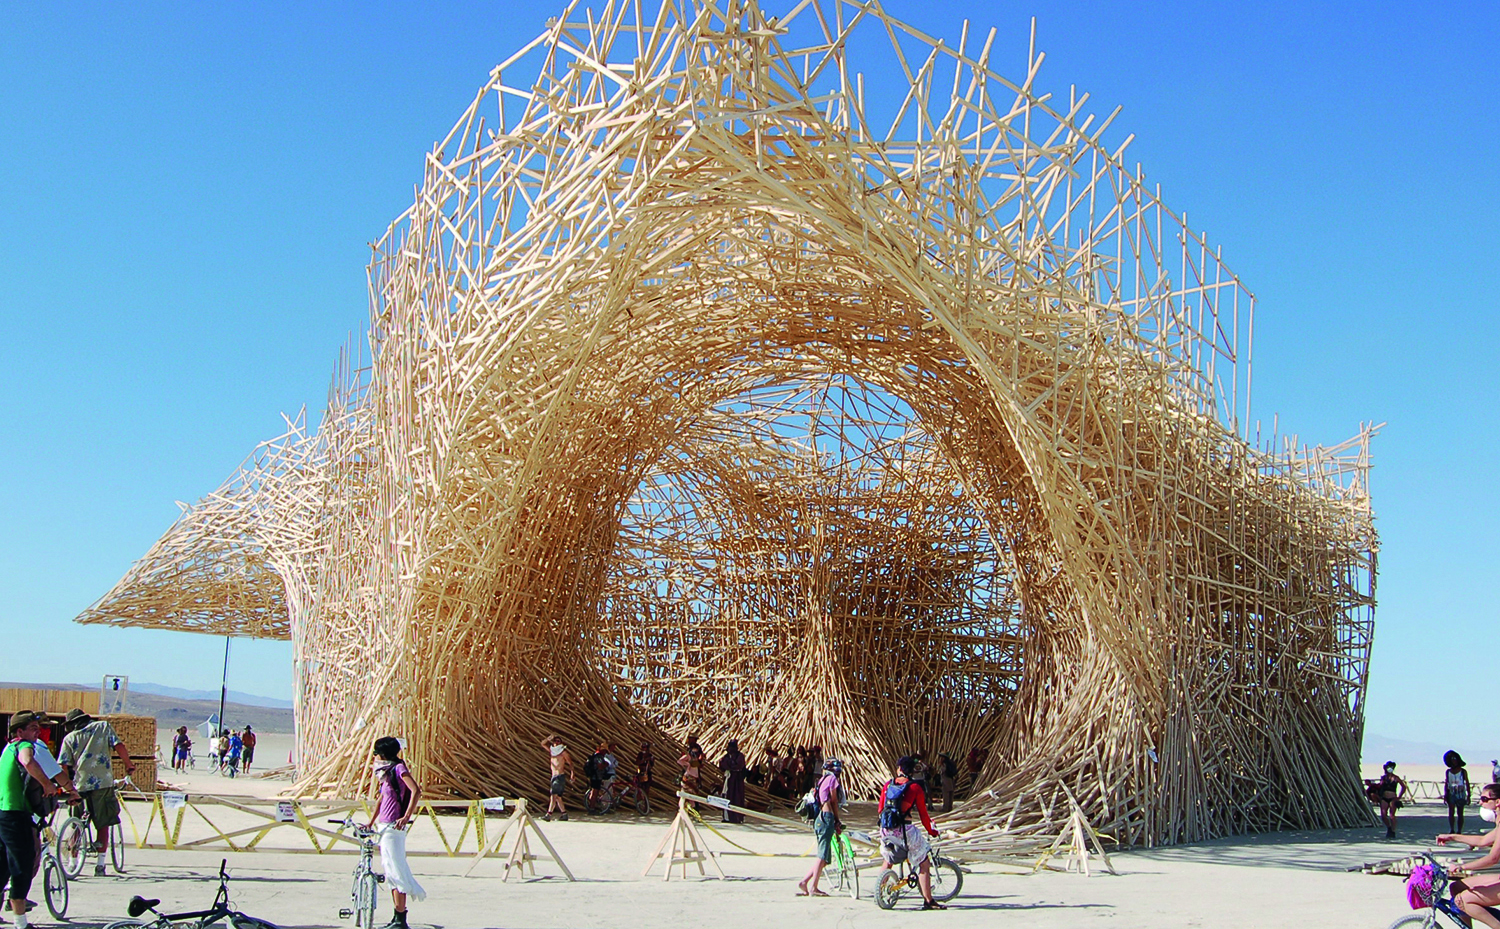 Instalación Uchronia en el festival Burning Man, en Nevada NV (Estados Unidos), de Arne Quinze. Libro Wood de Phaidon